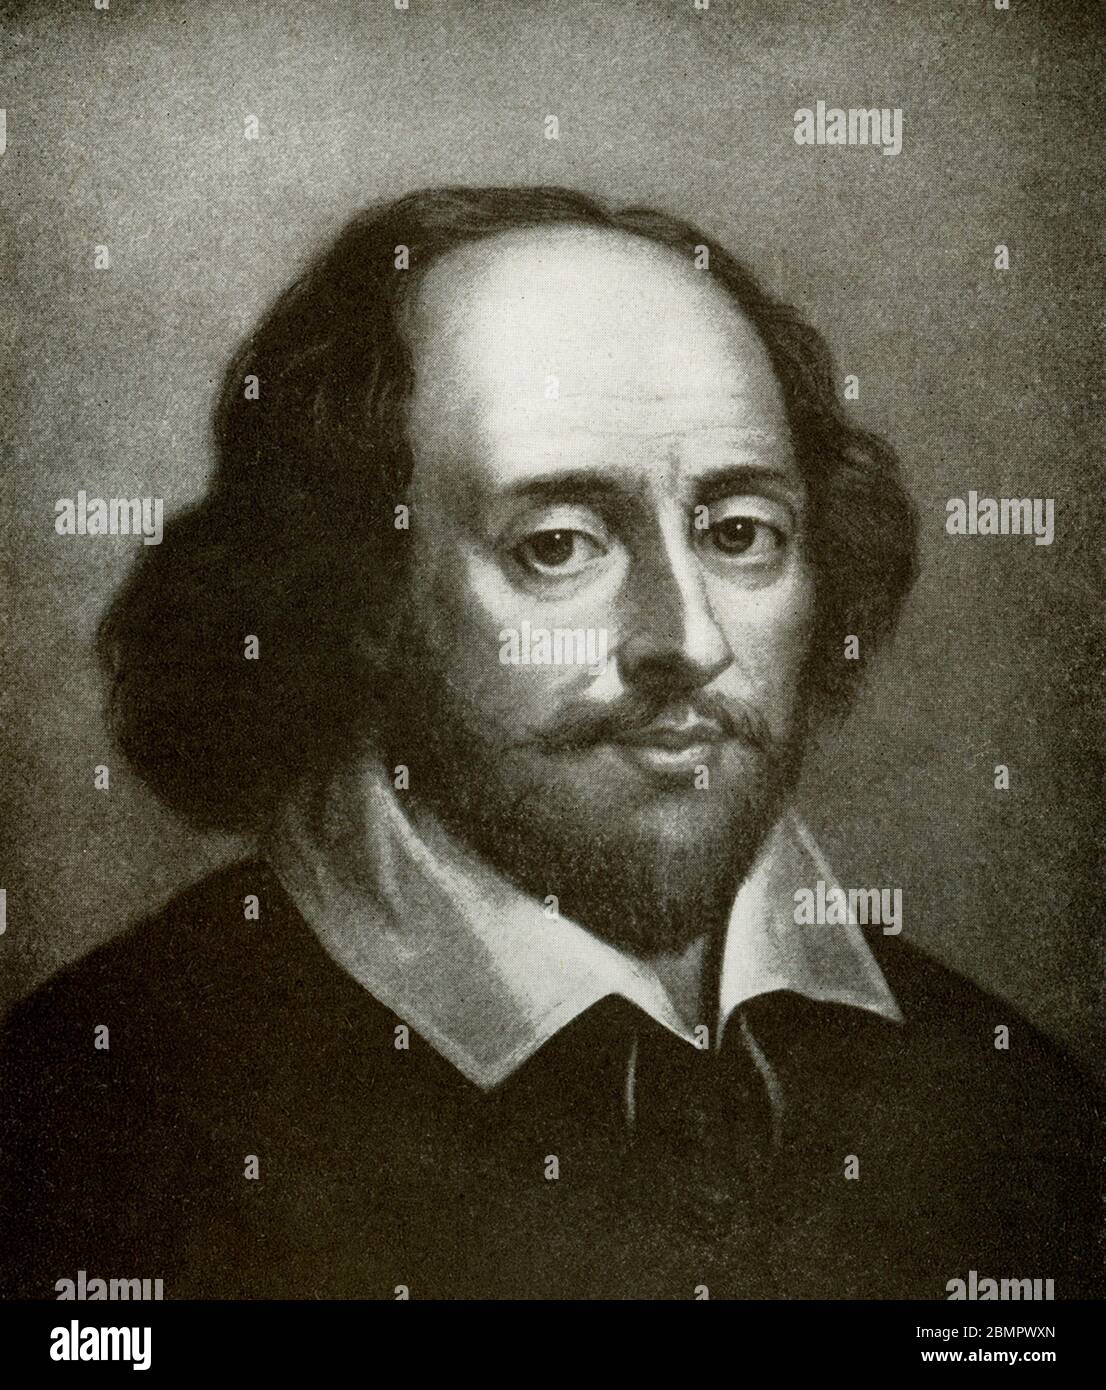 William Shakespeare (gestorben 1616) war ein englischer Dichter und Dramatiker - und wird von vielen als der beste englische Schriftsteller aller Zeiten betrachtet. Stockfoto